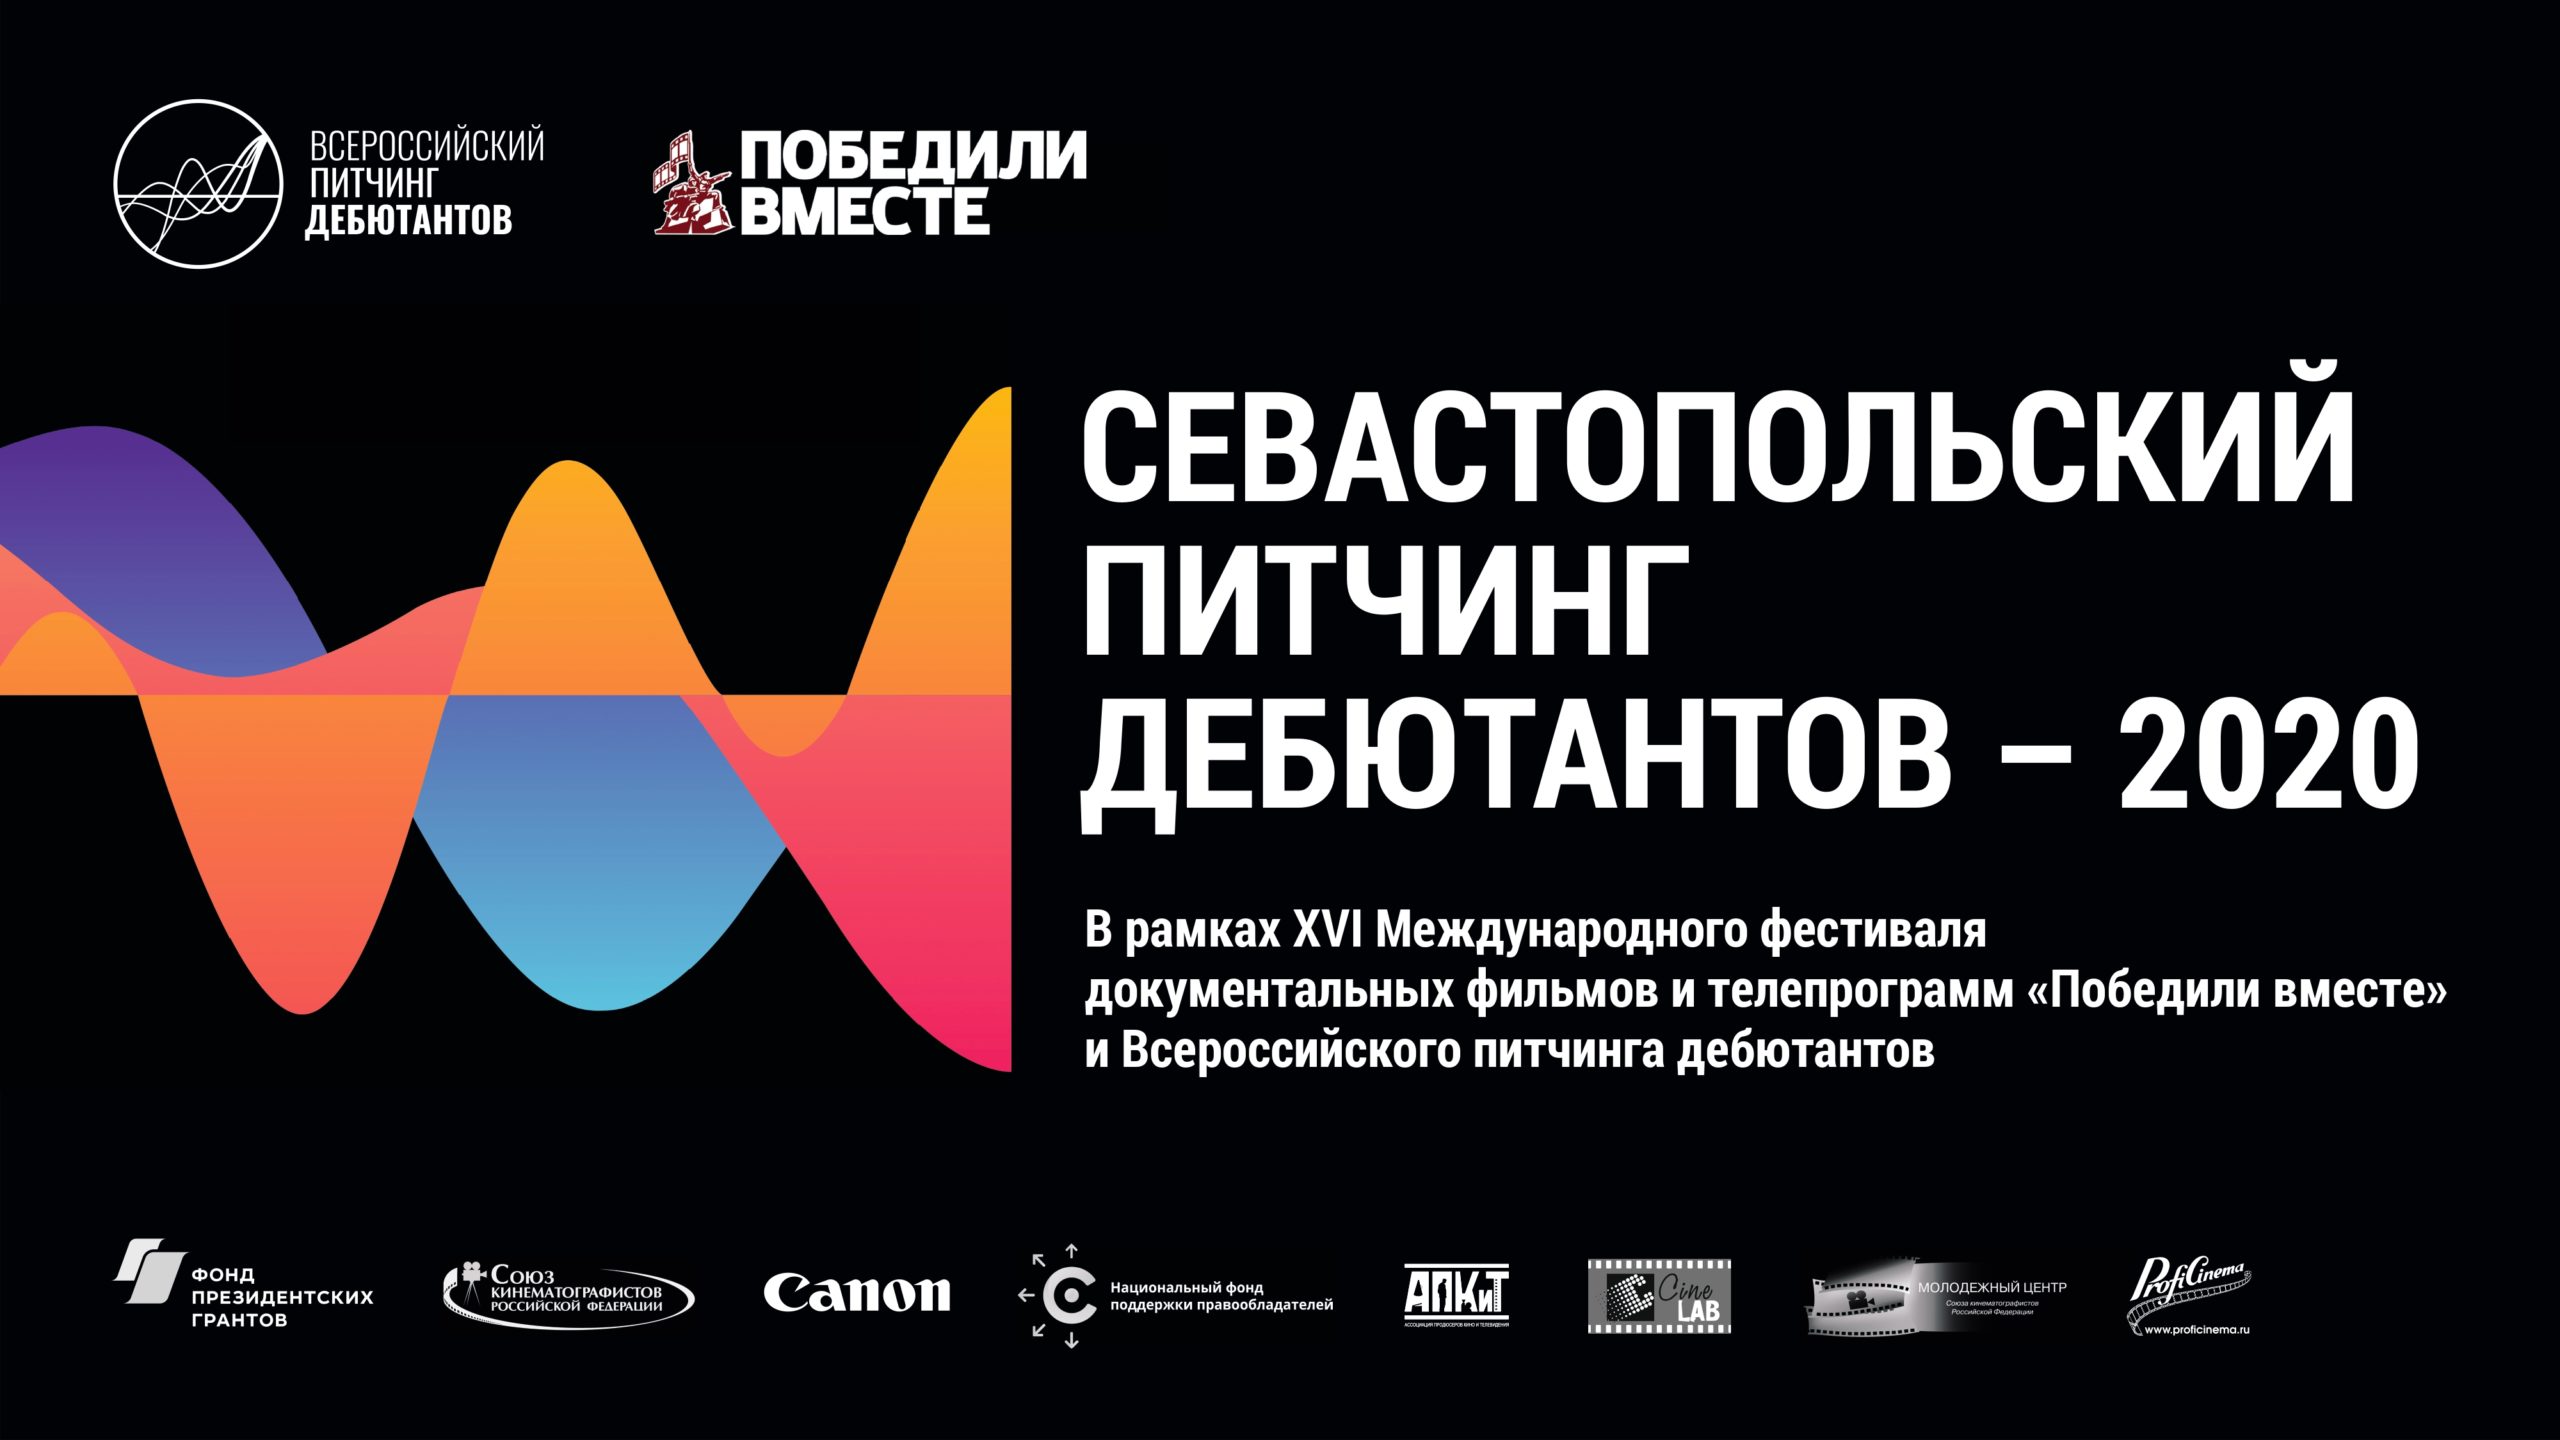 На Севастопольском питчинге дебютантов-2020 победила короткометражка о ветеране войны